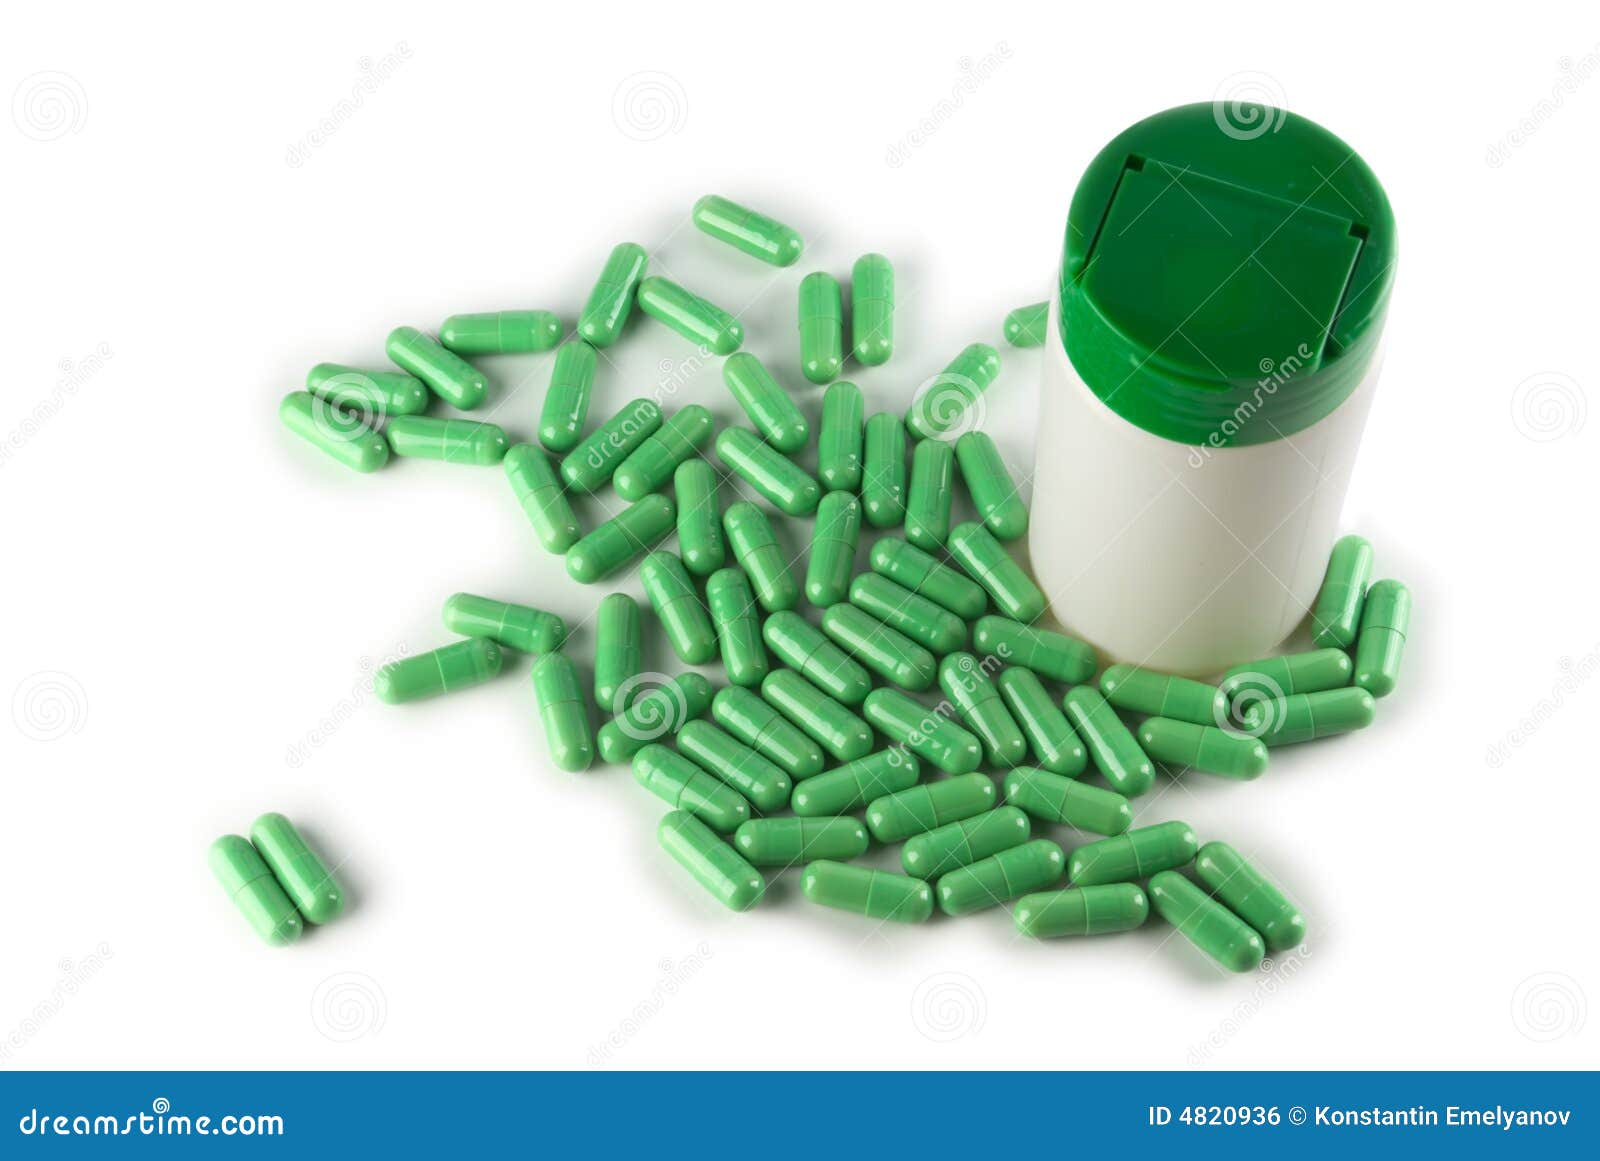 Narkotyki. Butelki zielone pigułki ocieniają odizolować white